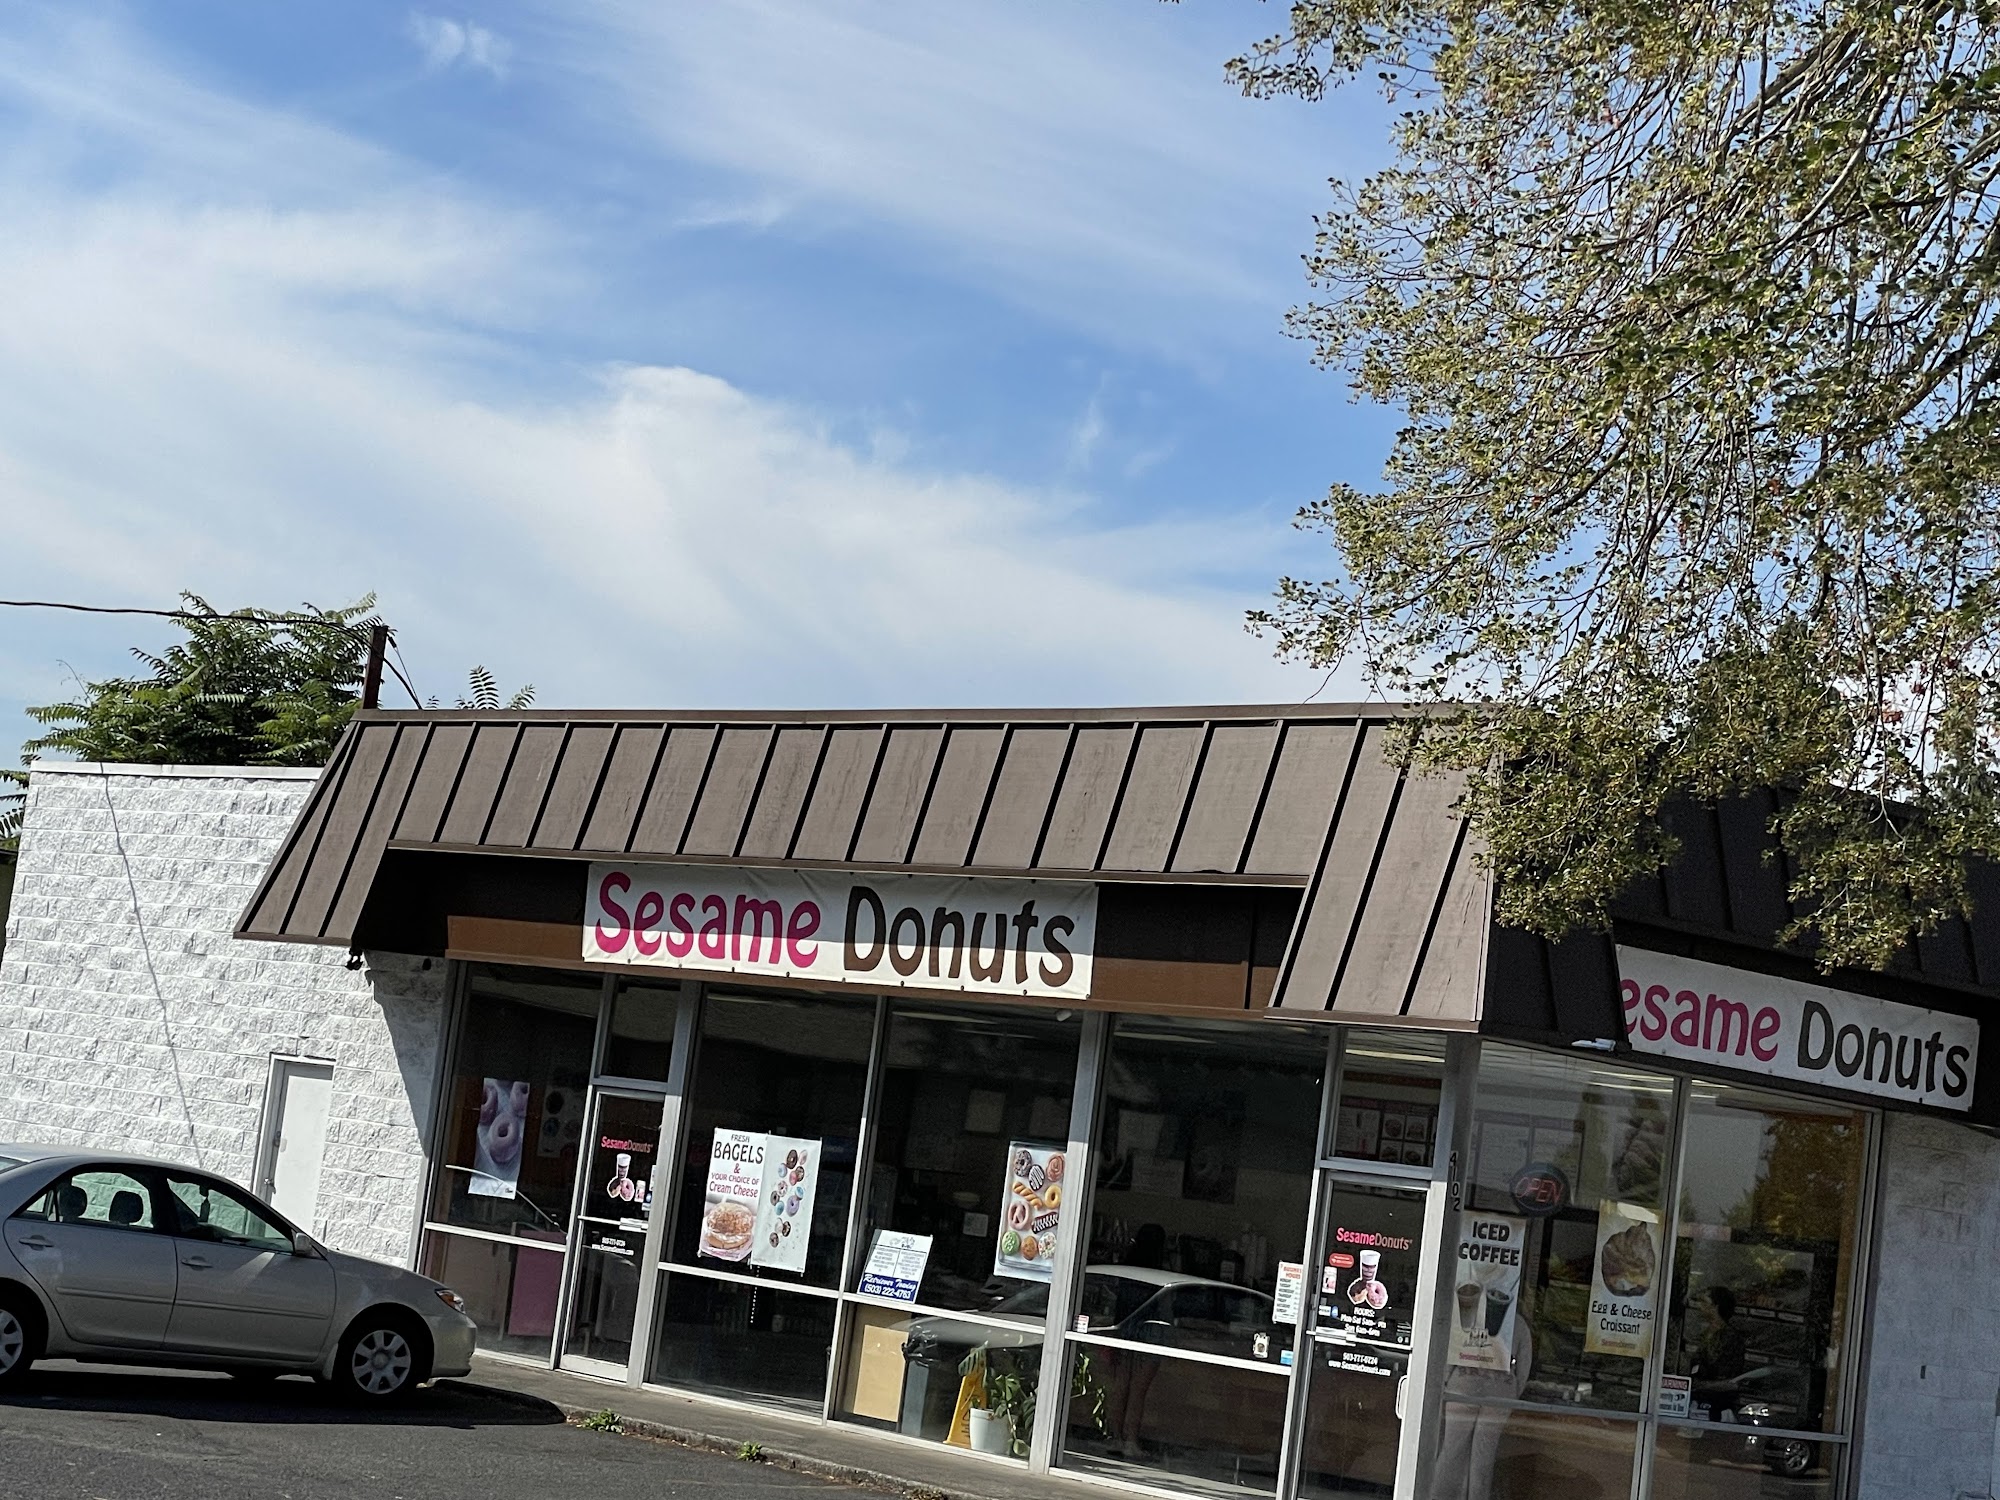 Sesame Donuts